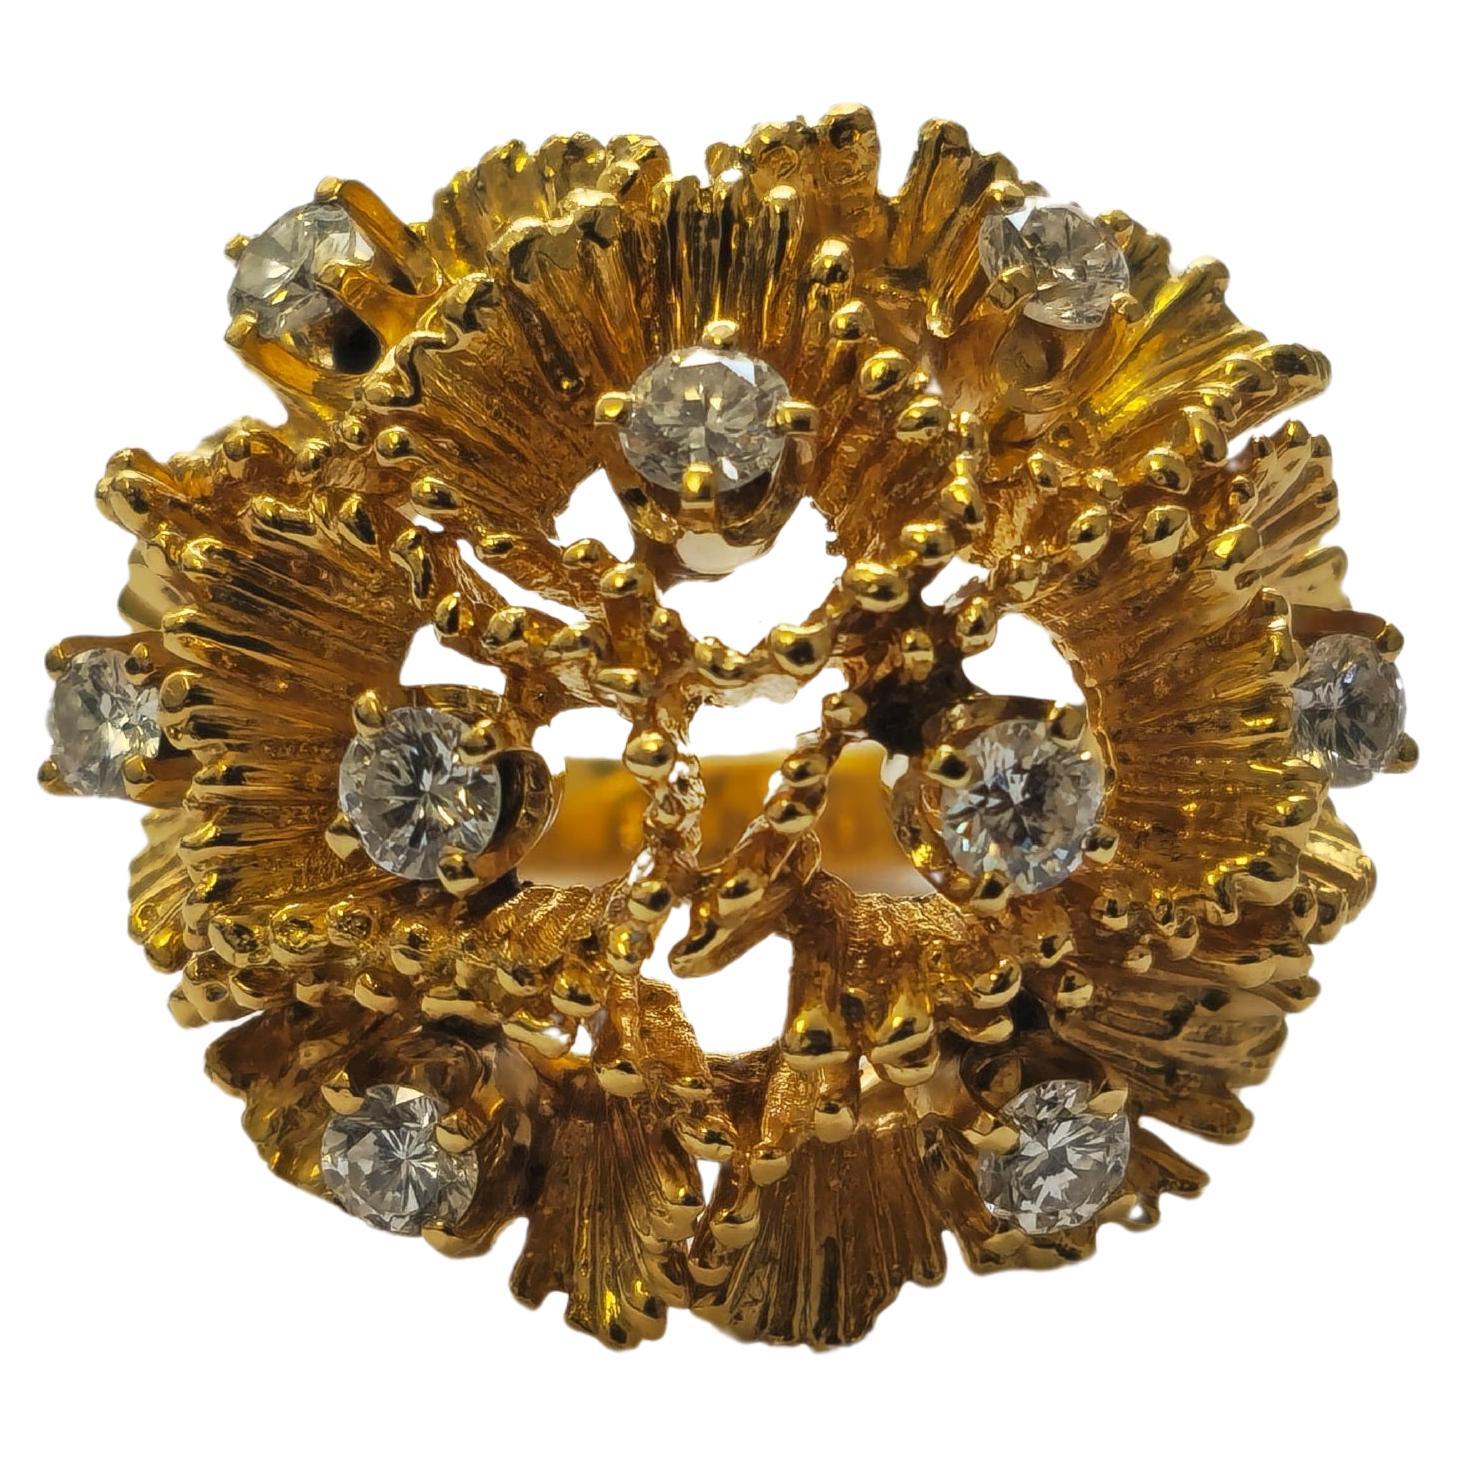 Dieses komplette Set aus 18 Karat Gold umfasst einen Ring mit einem Gewicht von 15,5 Gramm (Größe 5,50 US) und einem Gesamtgewicht der Diamanten von 0,80 Karat. Die Ohrringe wiegen 25,8 Gramm, haben ein Gesamtgewicht von 1,49 Karat und messen 1,20 x